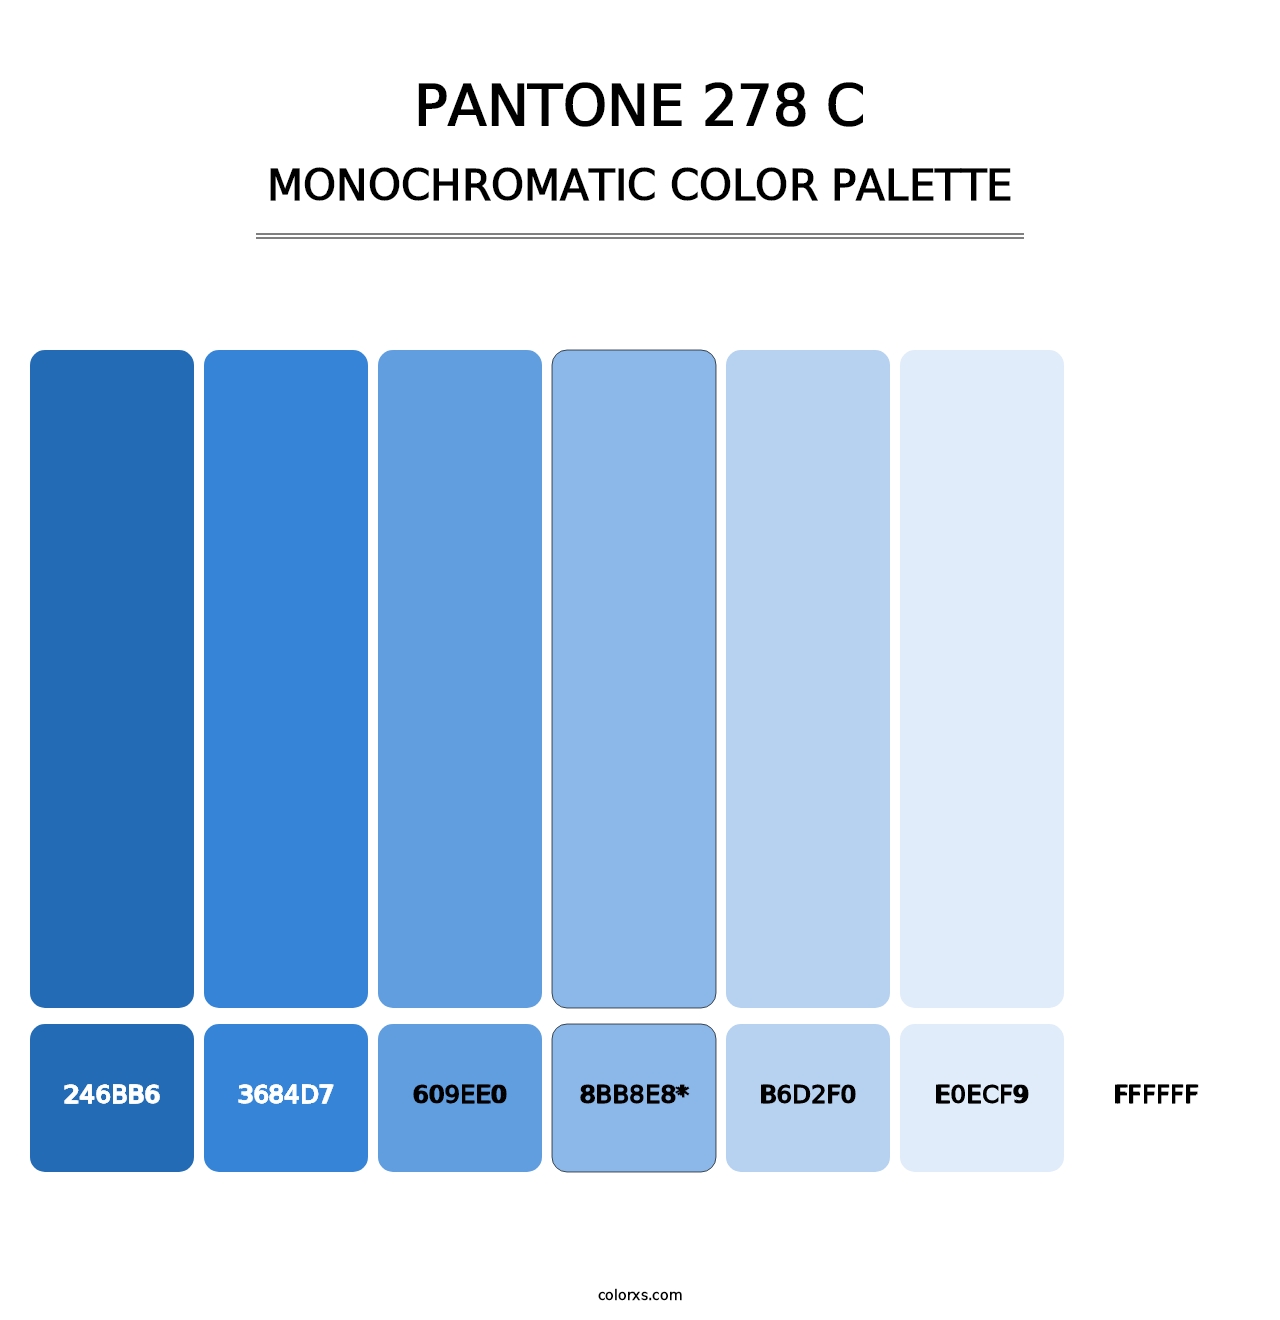 PANTONE 278 C - Monochromatic Color Palette